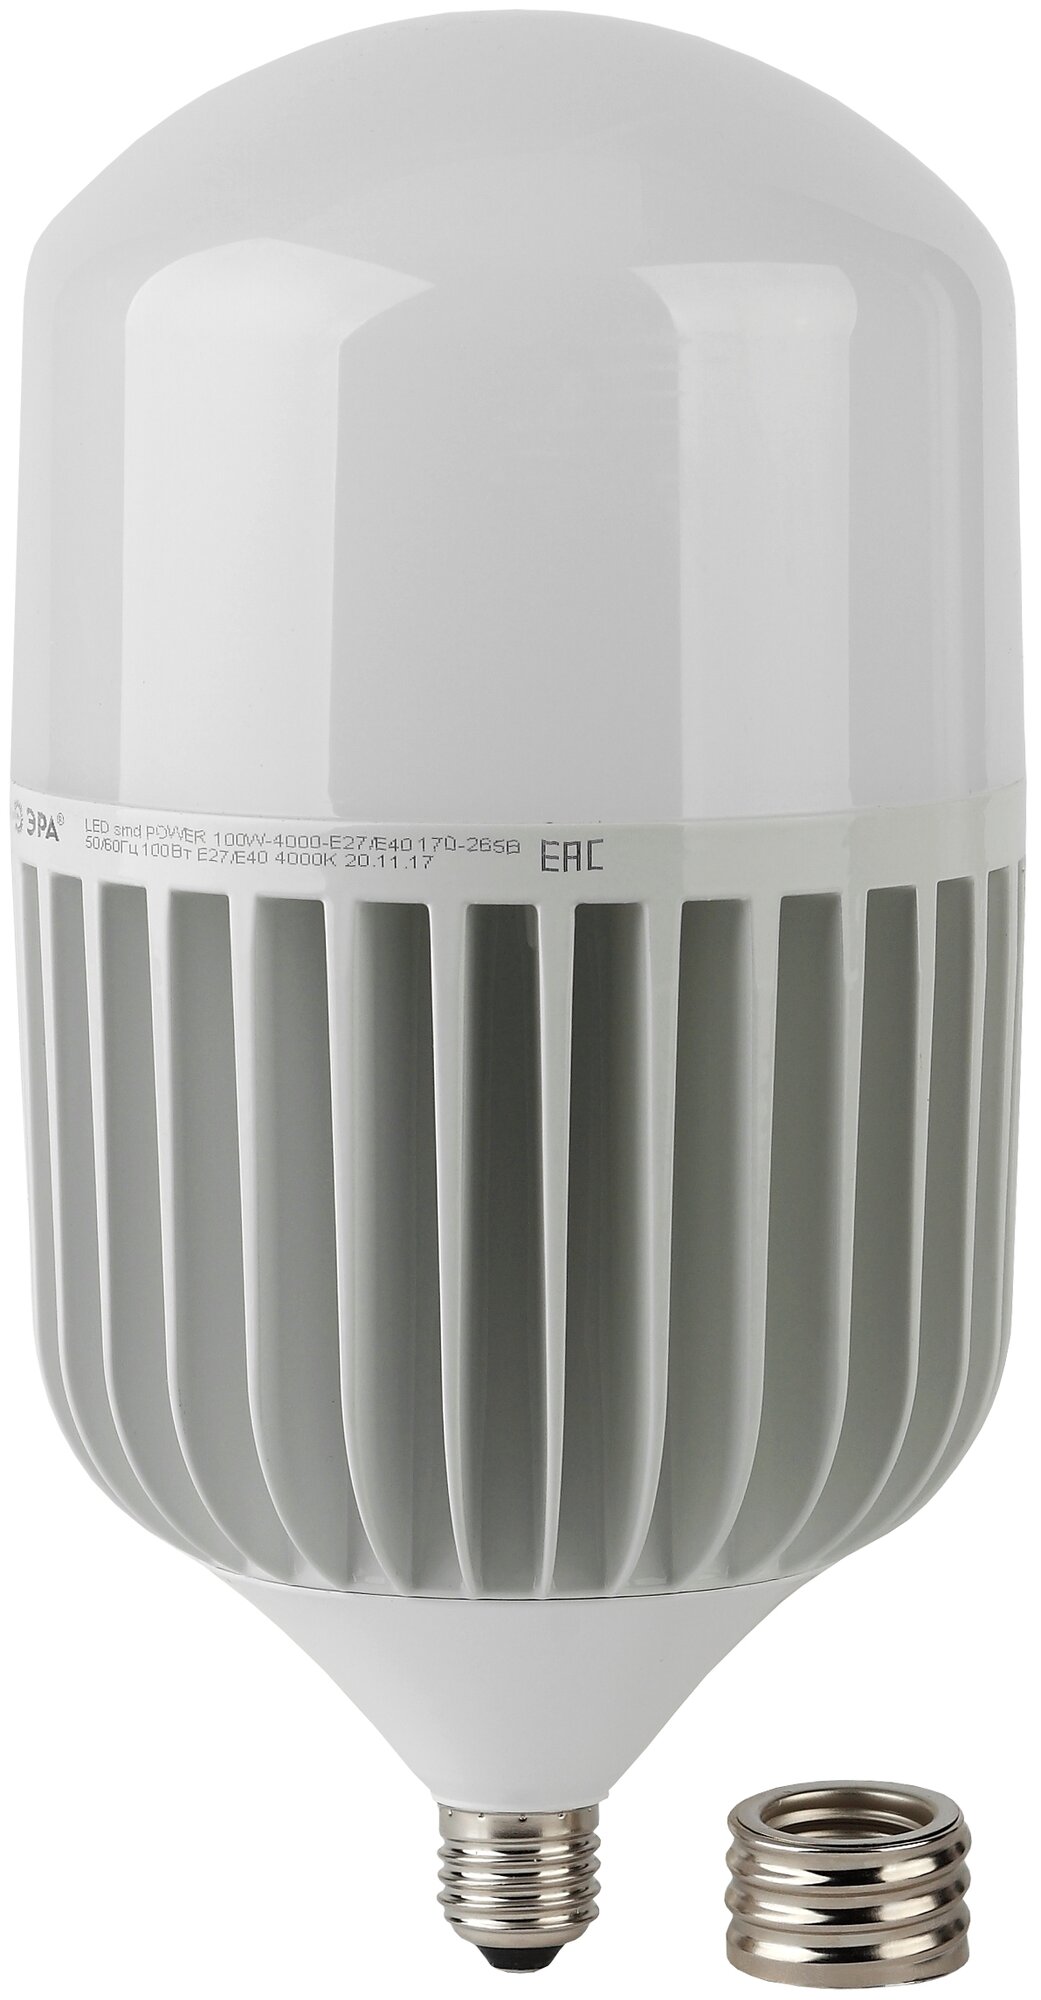 Светодиодная лампа ЭРА STD LED POWER T160-100W-6500-E27/E40 100Вт колокол холодный дневной свет Б0032090